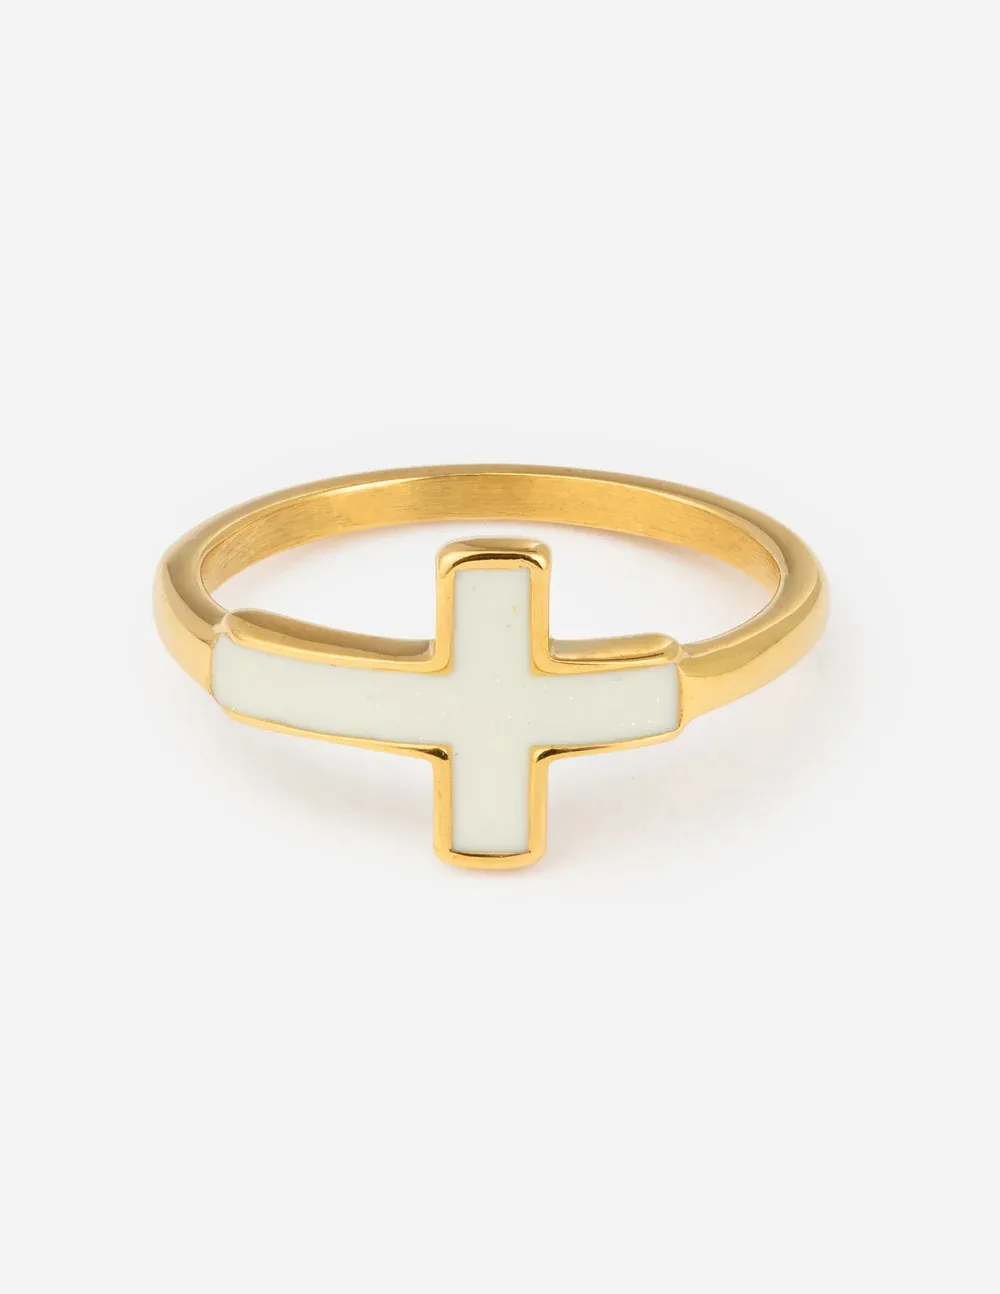 Покрытое натуральным золотом водонепроницаемое кольцо из нержавеющей стали христианское белое Капельное масло Эмаль Крест палец Лучший подарок ювелирные изделия